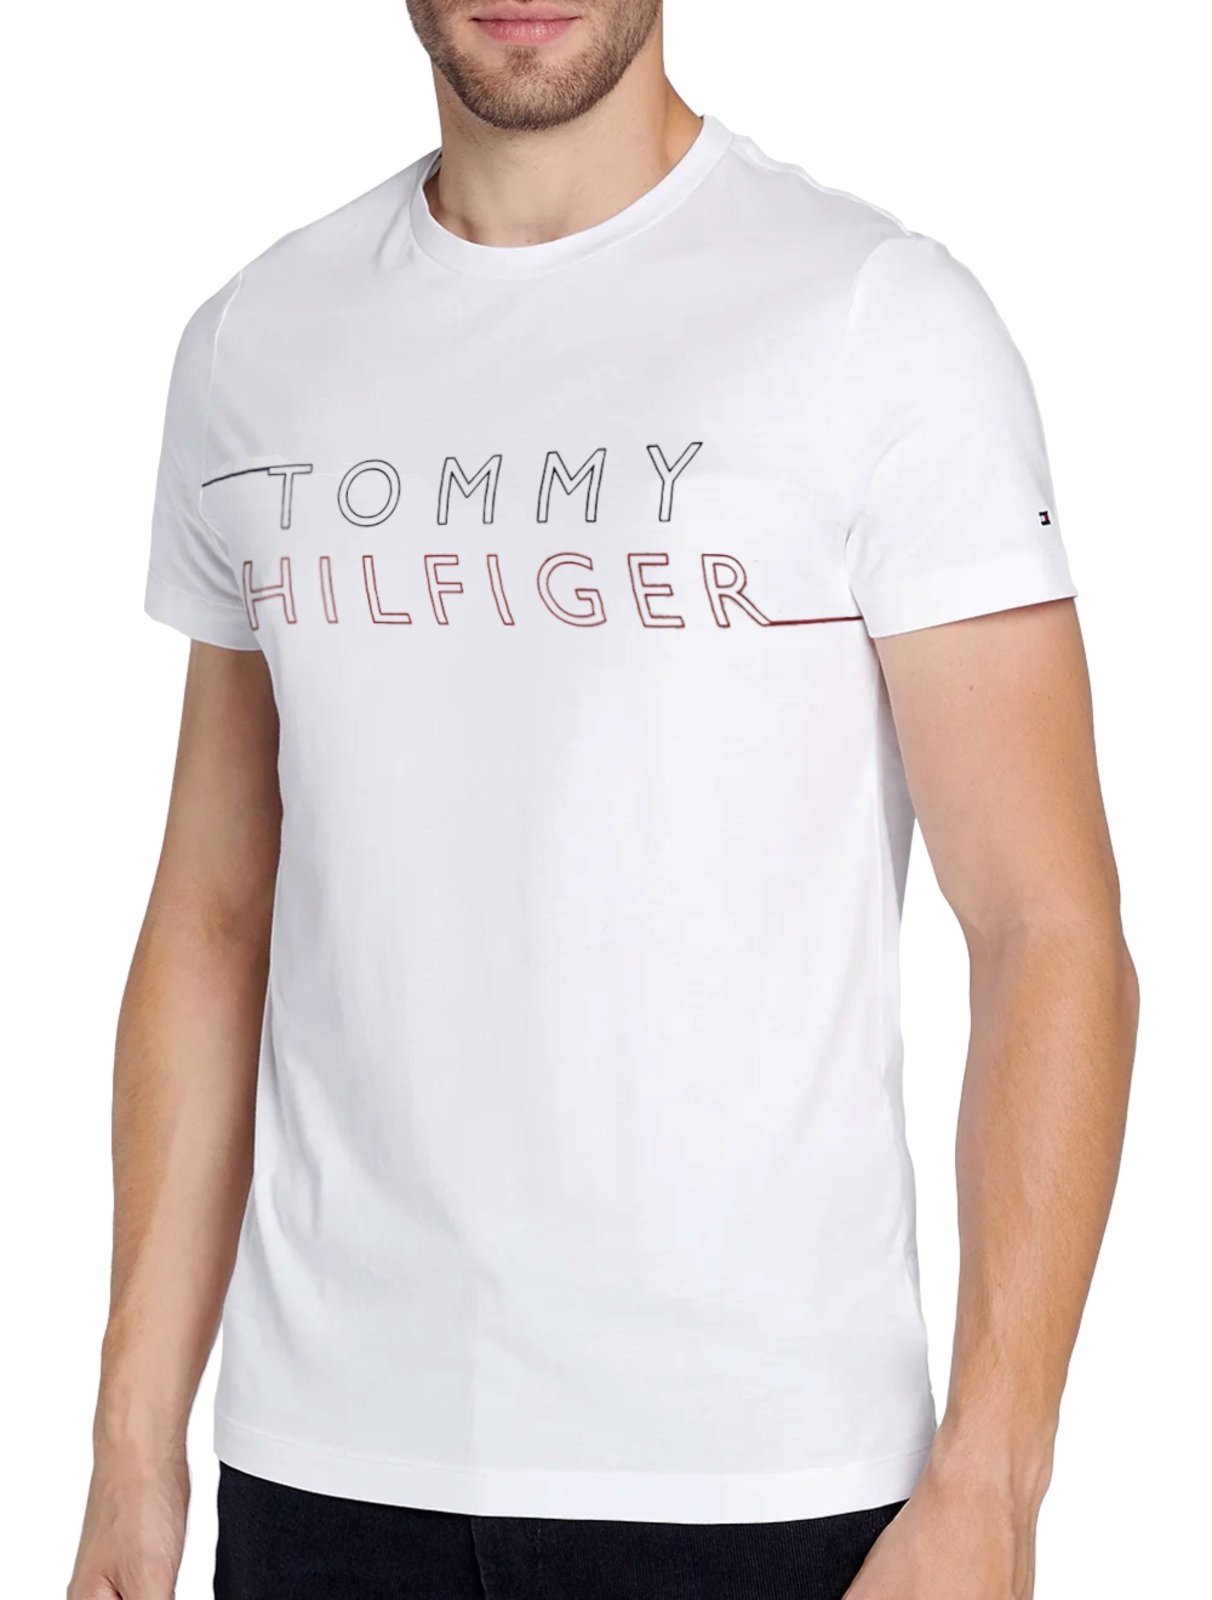 Camiseta Tommy Hilfiger Masculina Big Large Logo Branca - Compre